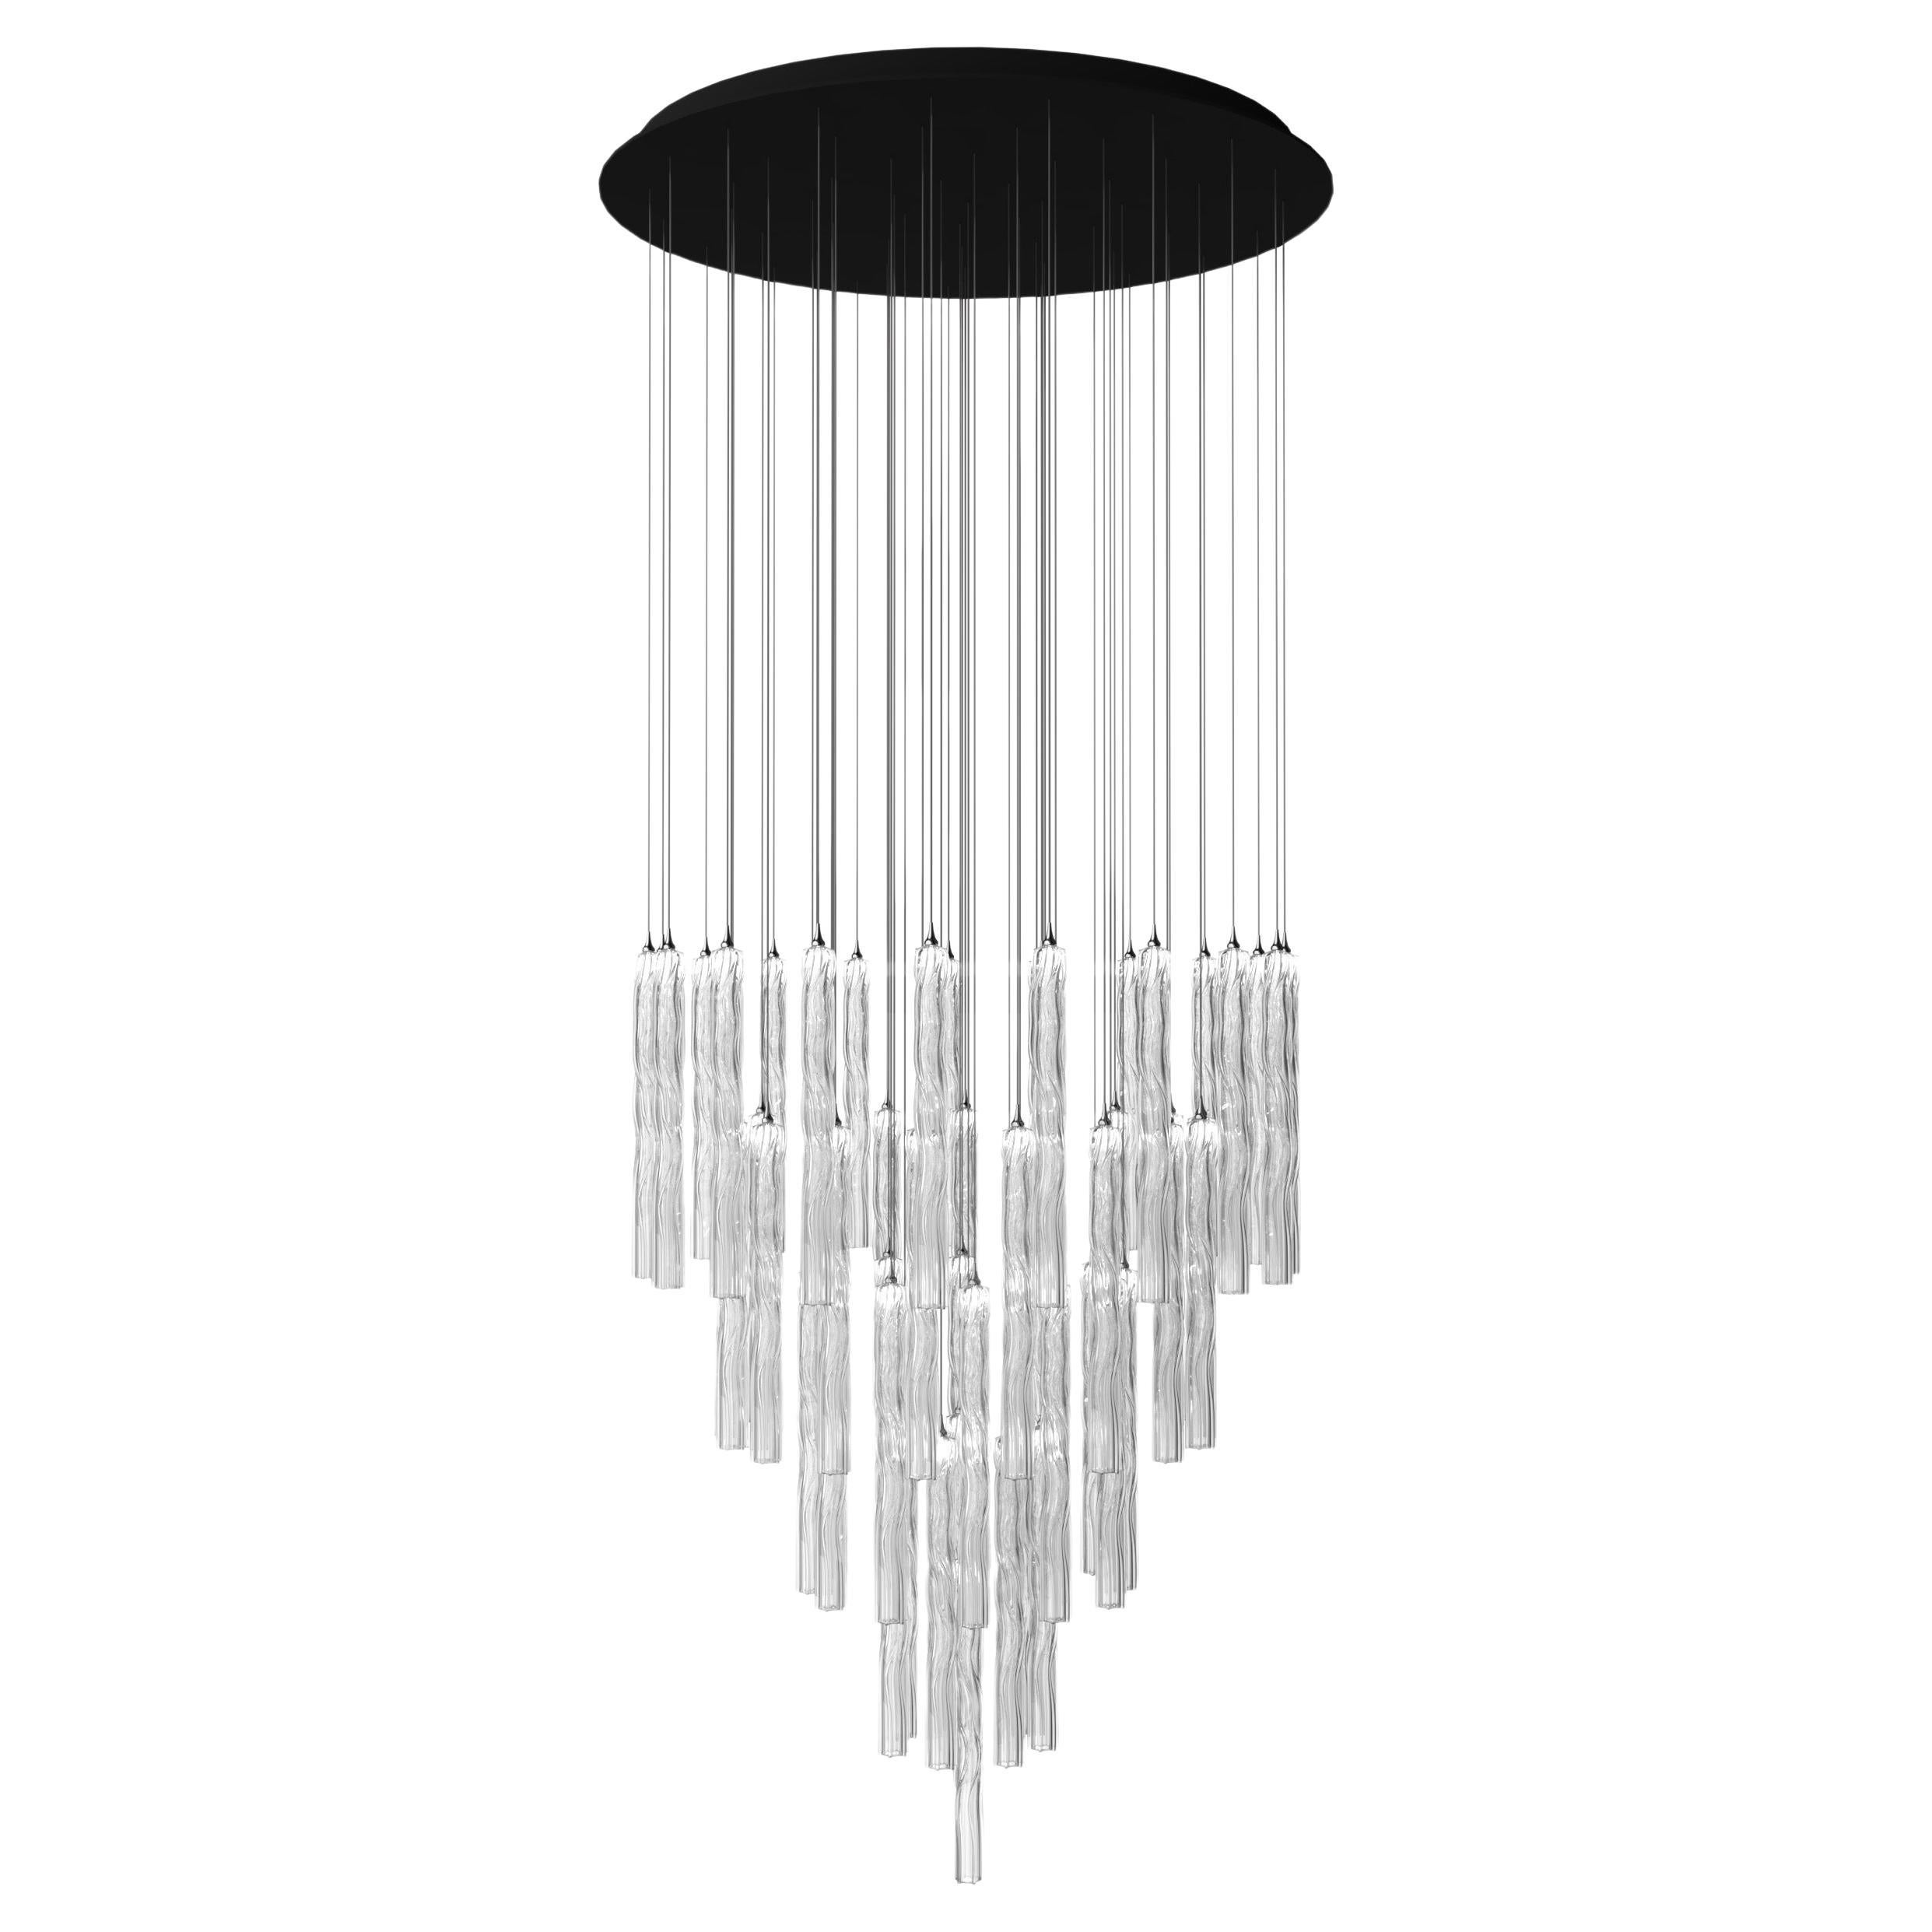 Kristall Wasserfall 56 Glas-Anhänger in zylindrischer Form mit gedrehtem Wirbel-Design LED